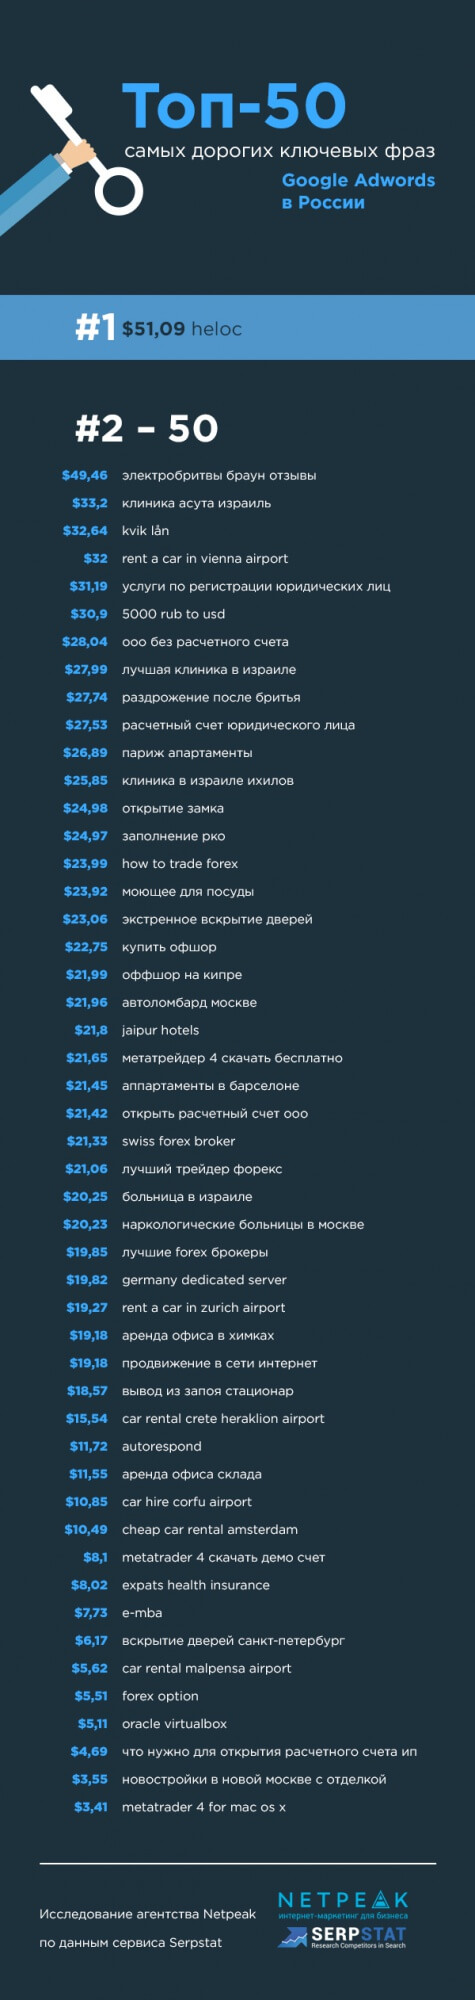 Топ-50 самых дорогих ключевых слов AdWords в России.jpg